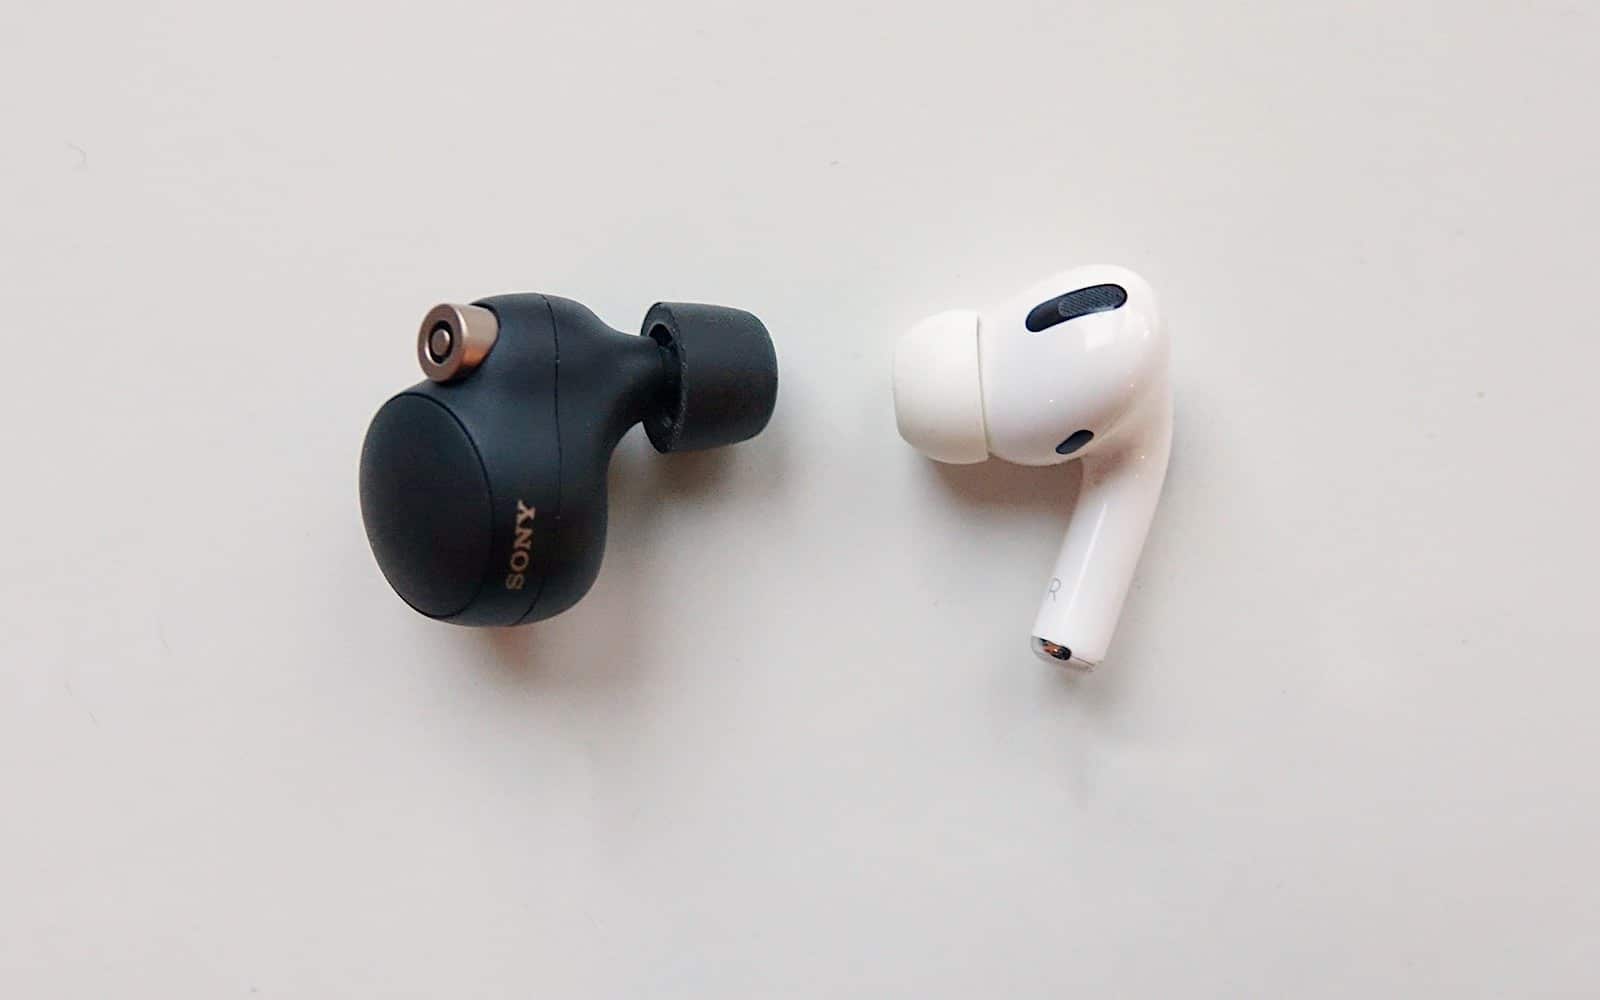 Sony WF-1000XM4 earphone (left) vs Apple AirPods Pro earphone (right)